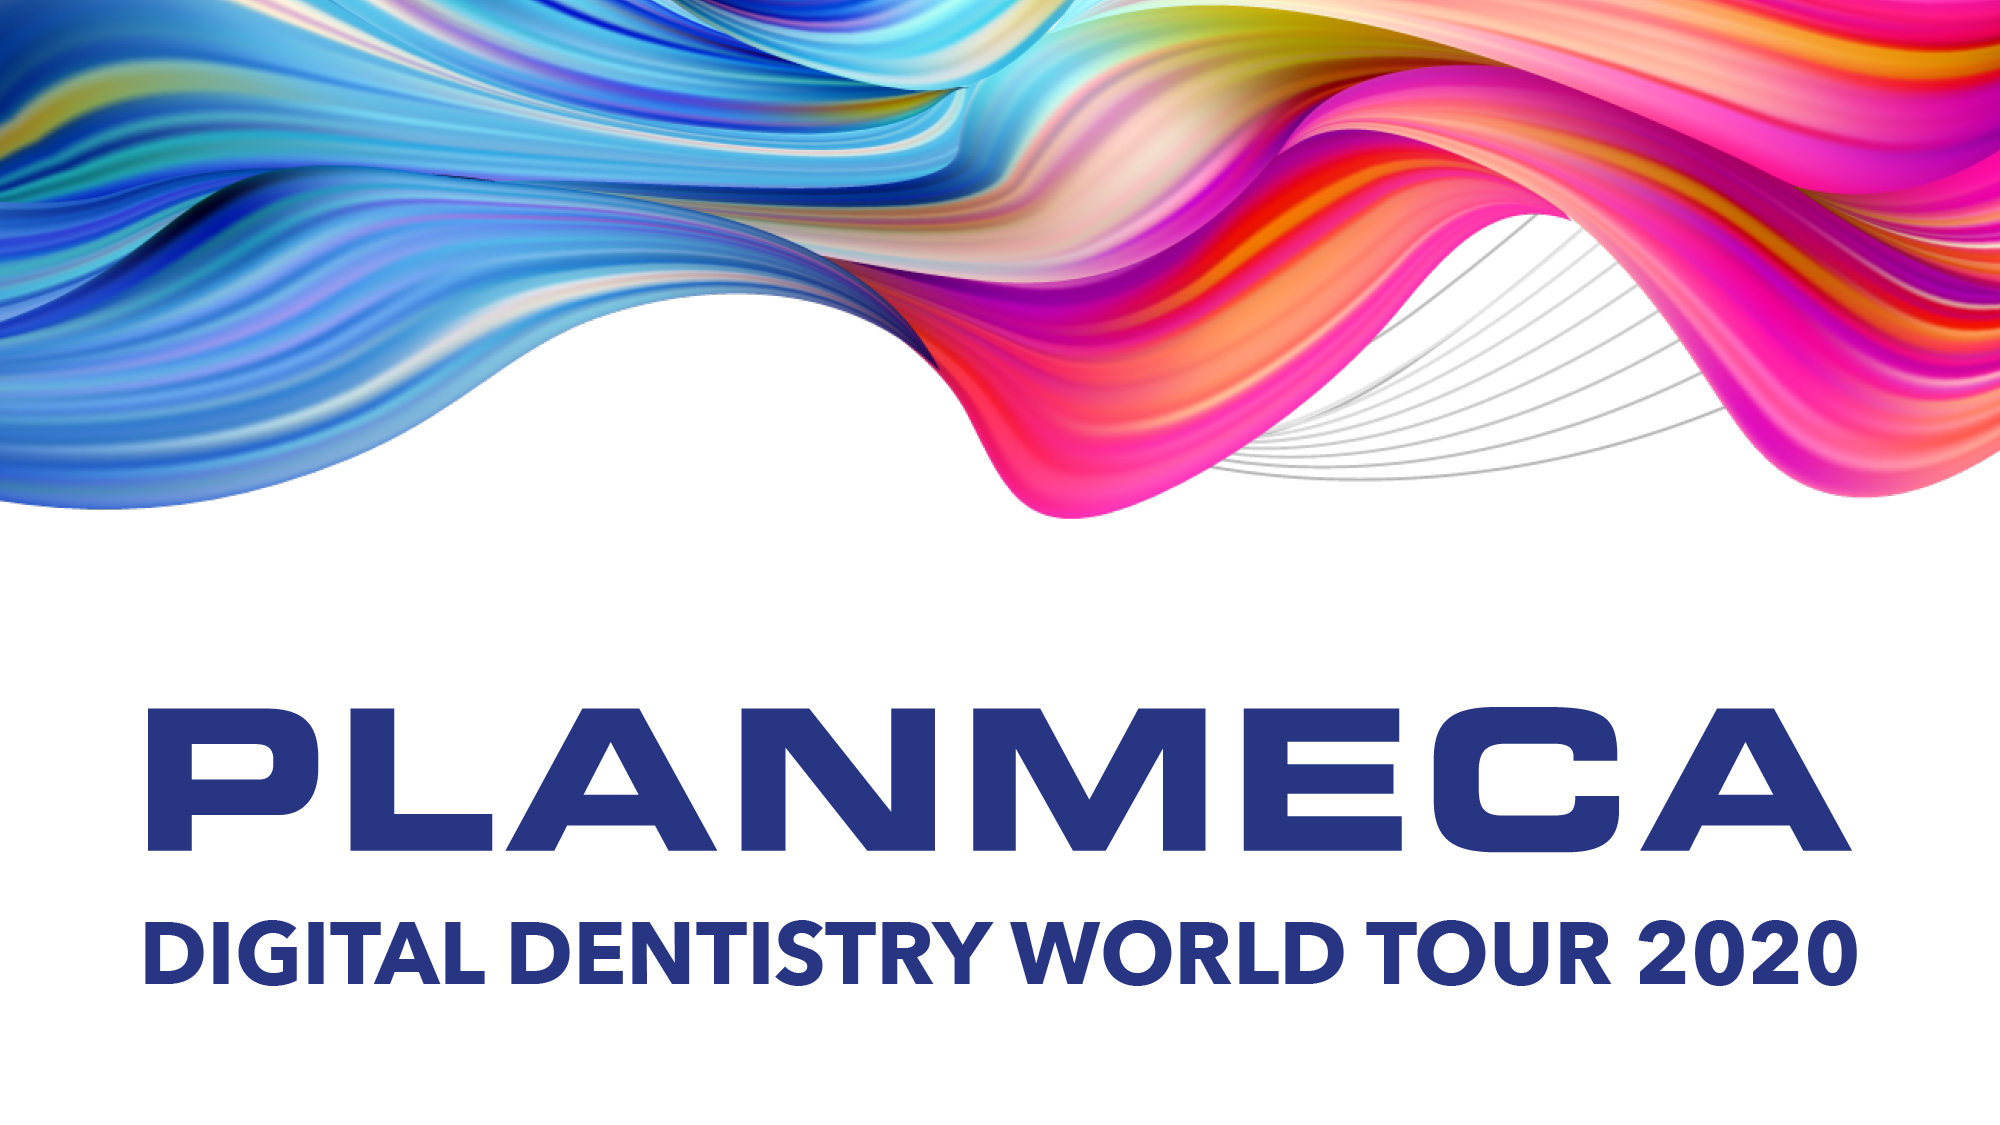 Planmeca Digital Dentistry World Tour 2020 valloittaa virtuaalimaailman